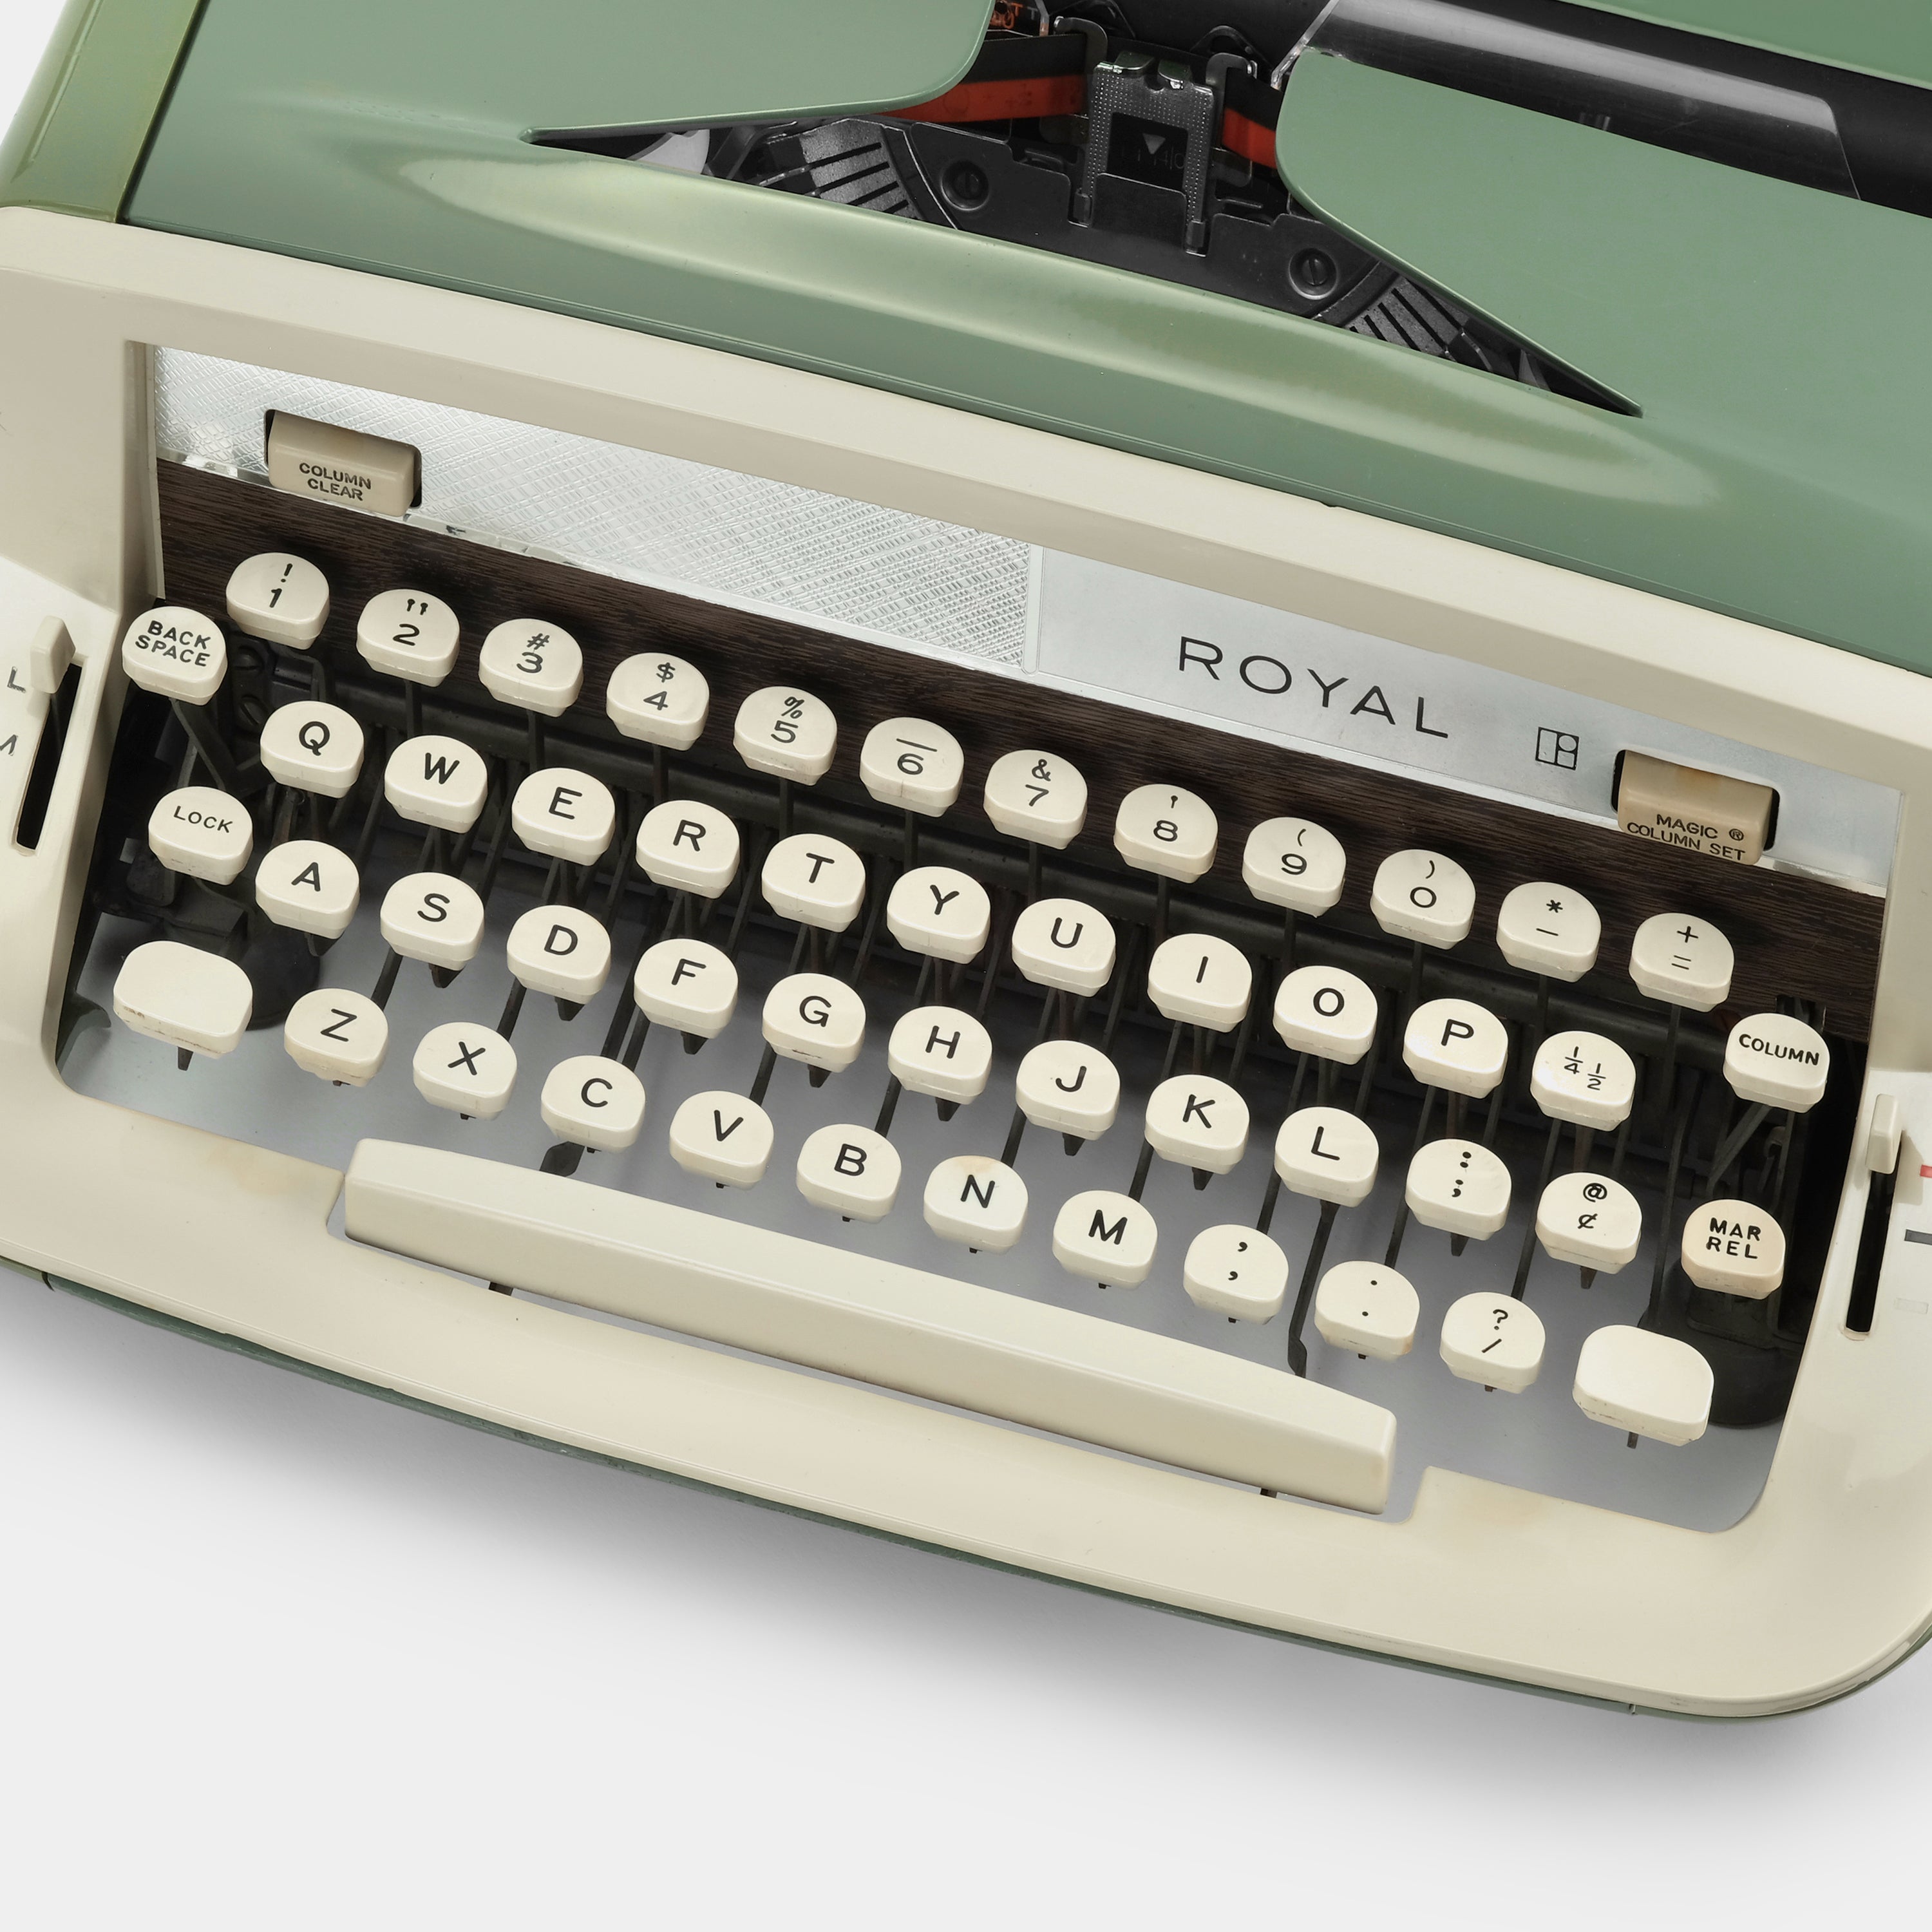 Royal Sabre Green Manual Typewriter and Case